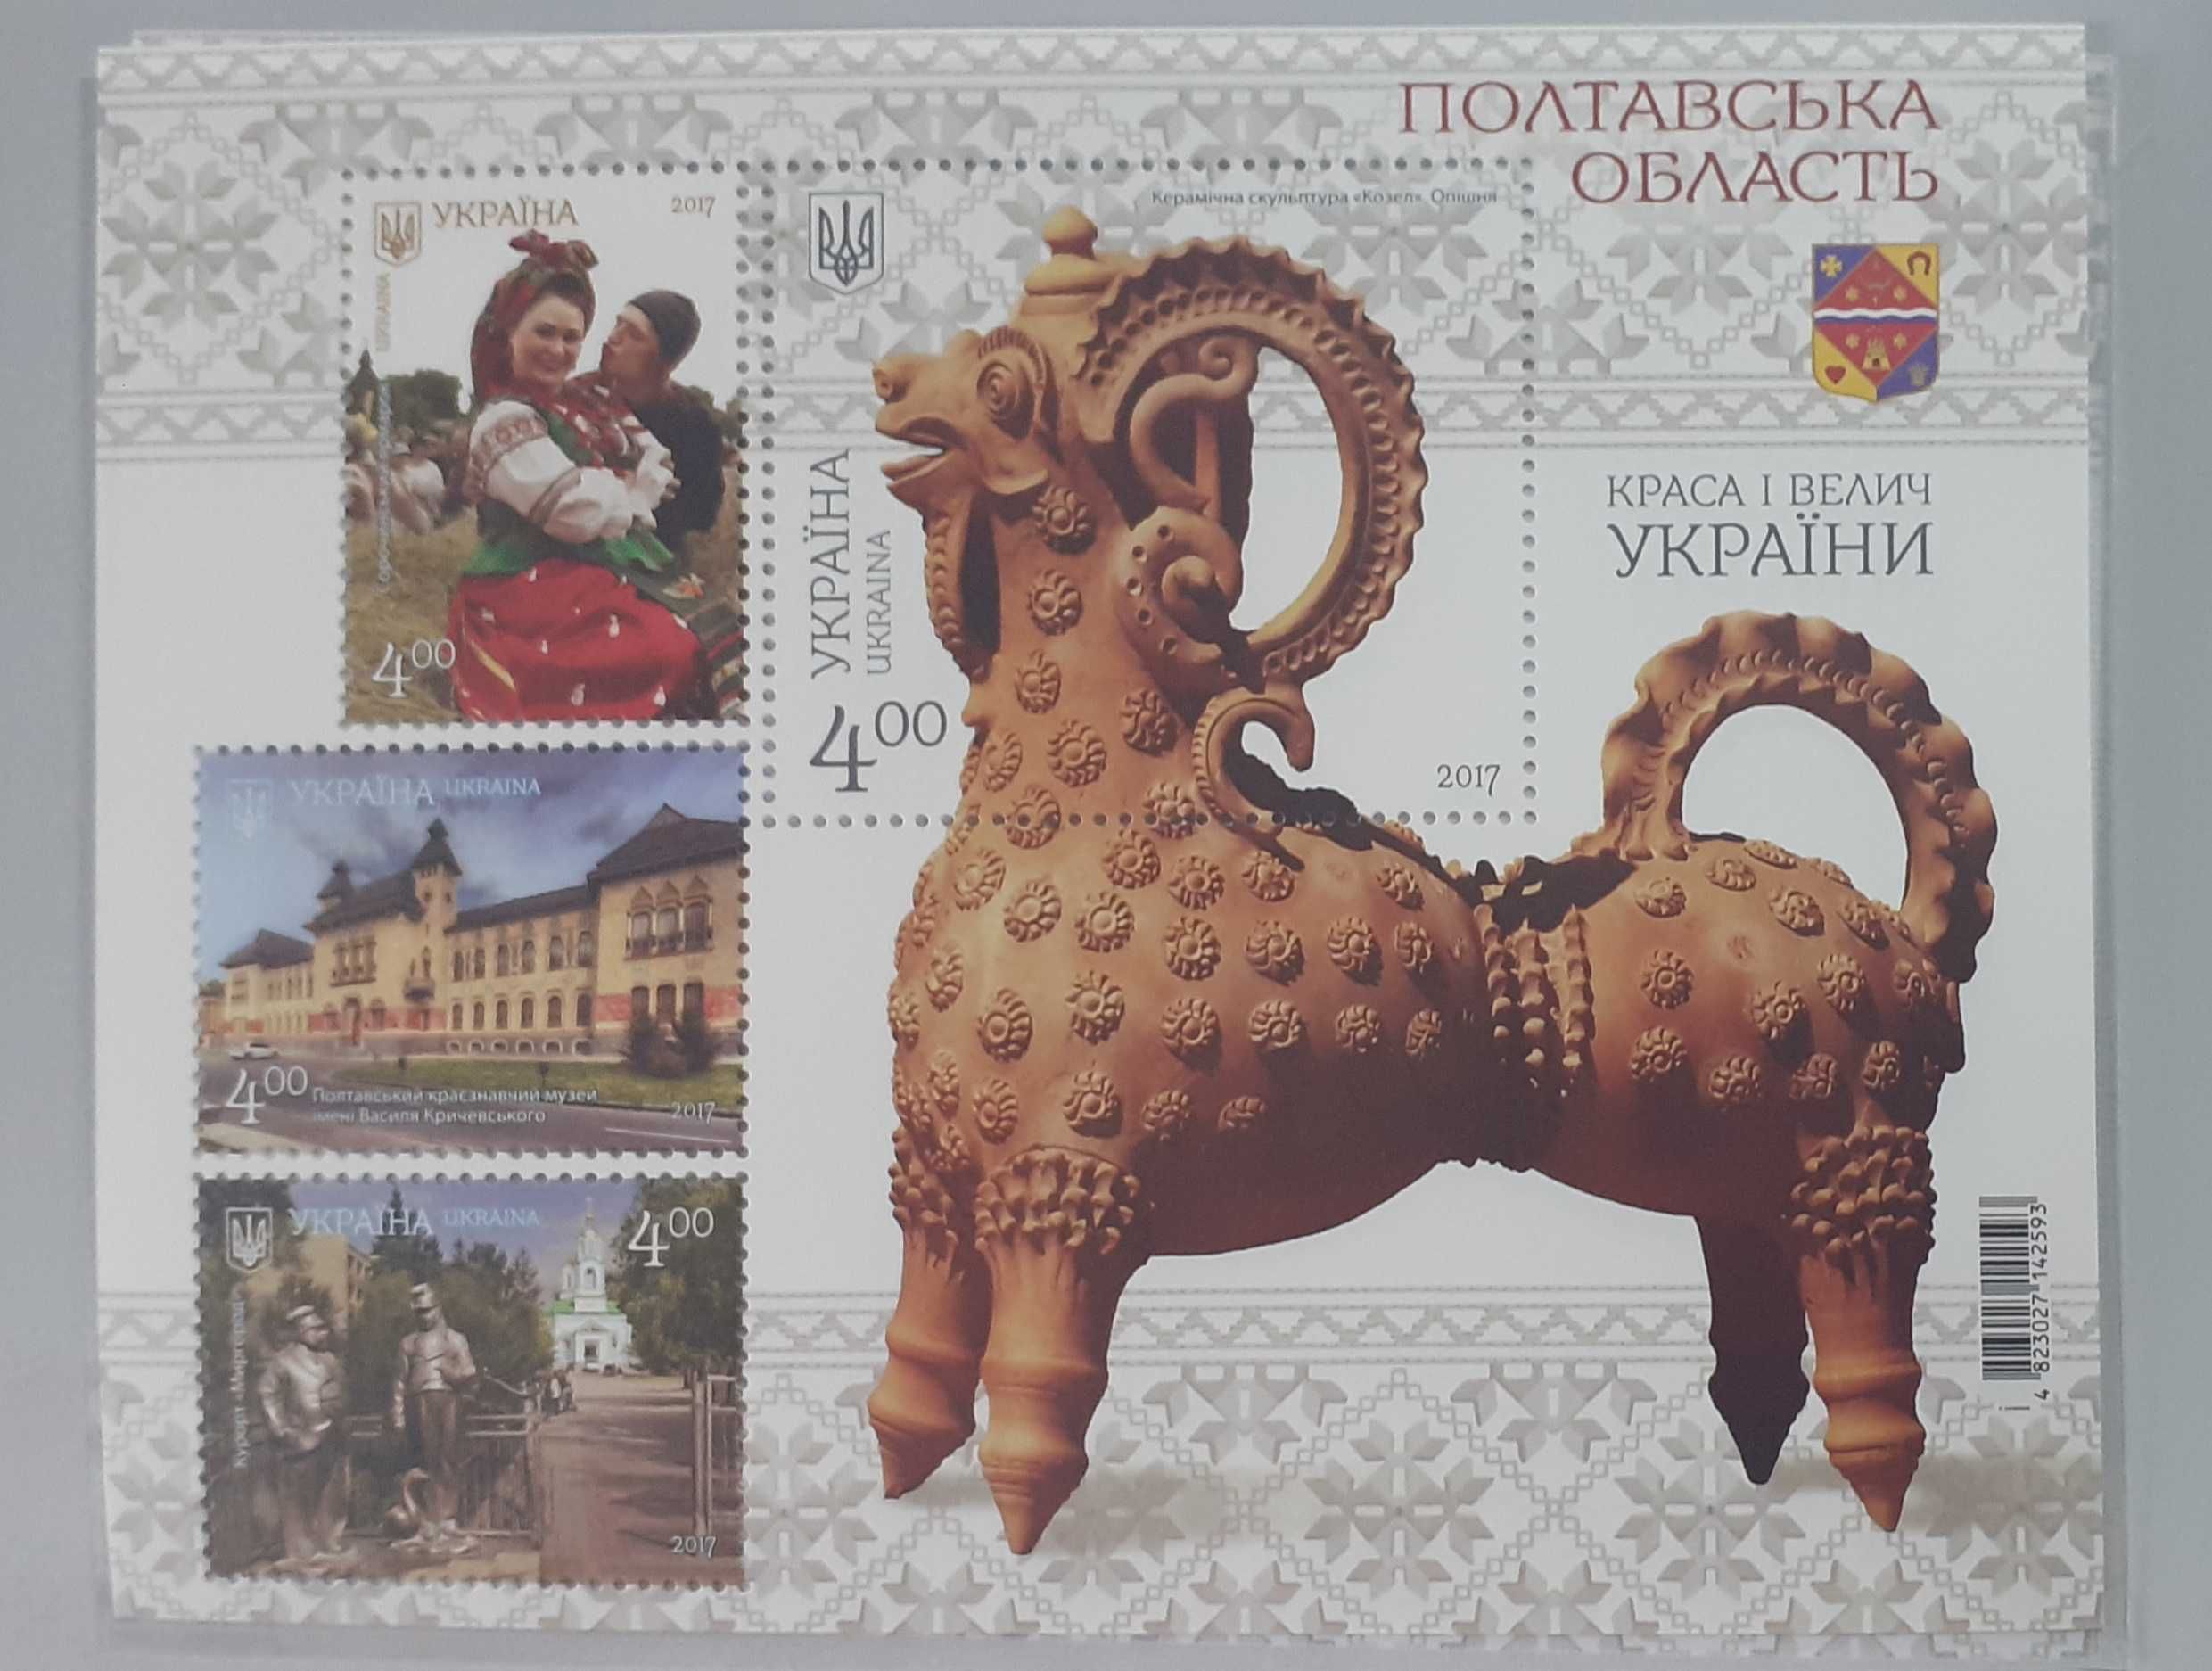 Книга  «Красота и величие Украины» в футляре с почтовыми марками